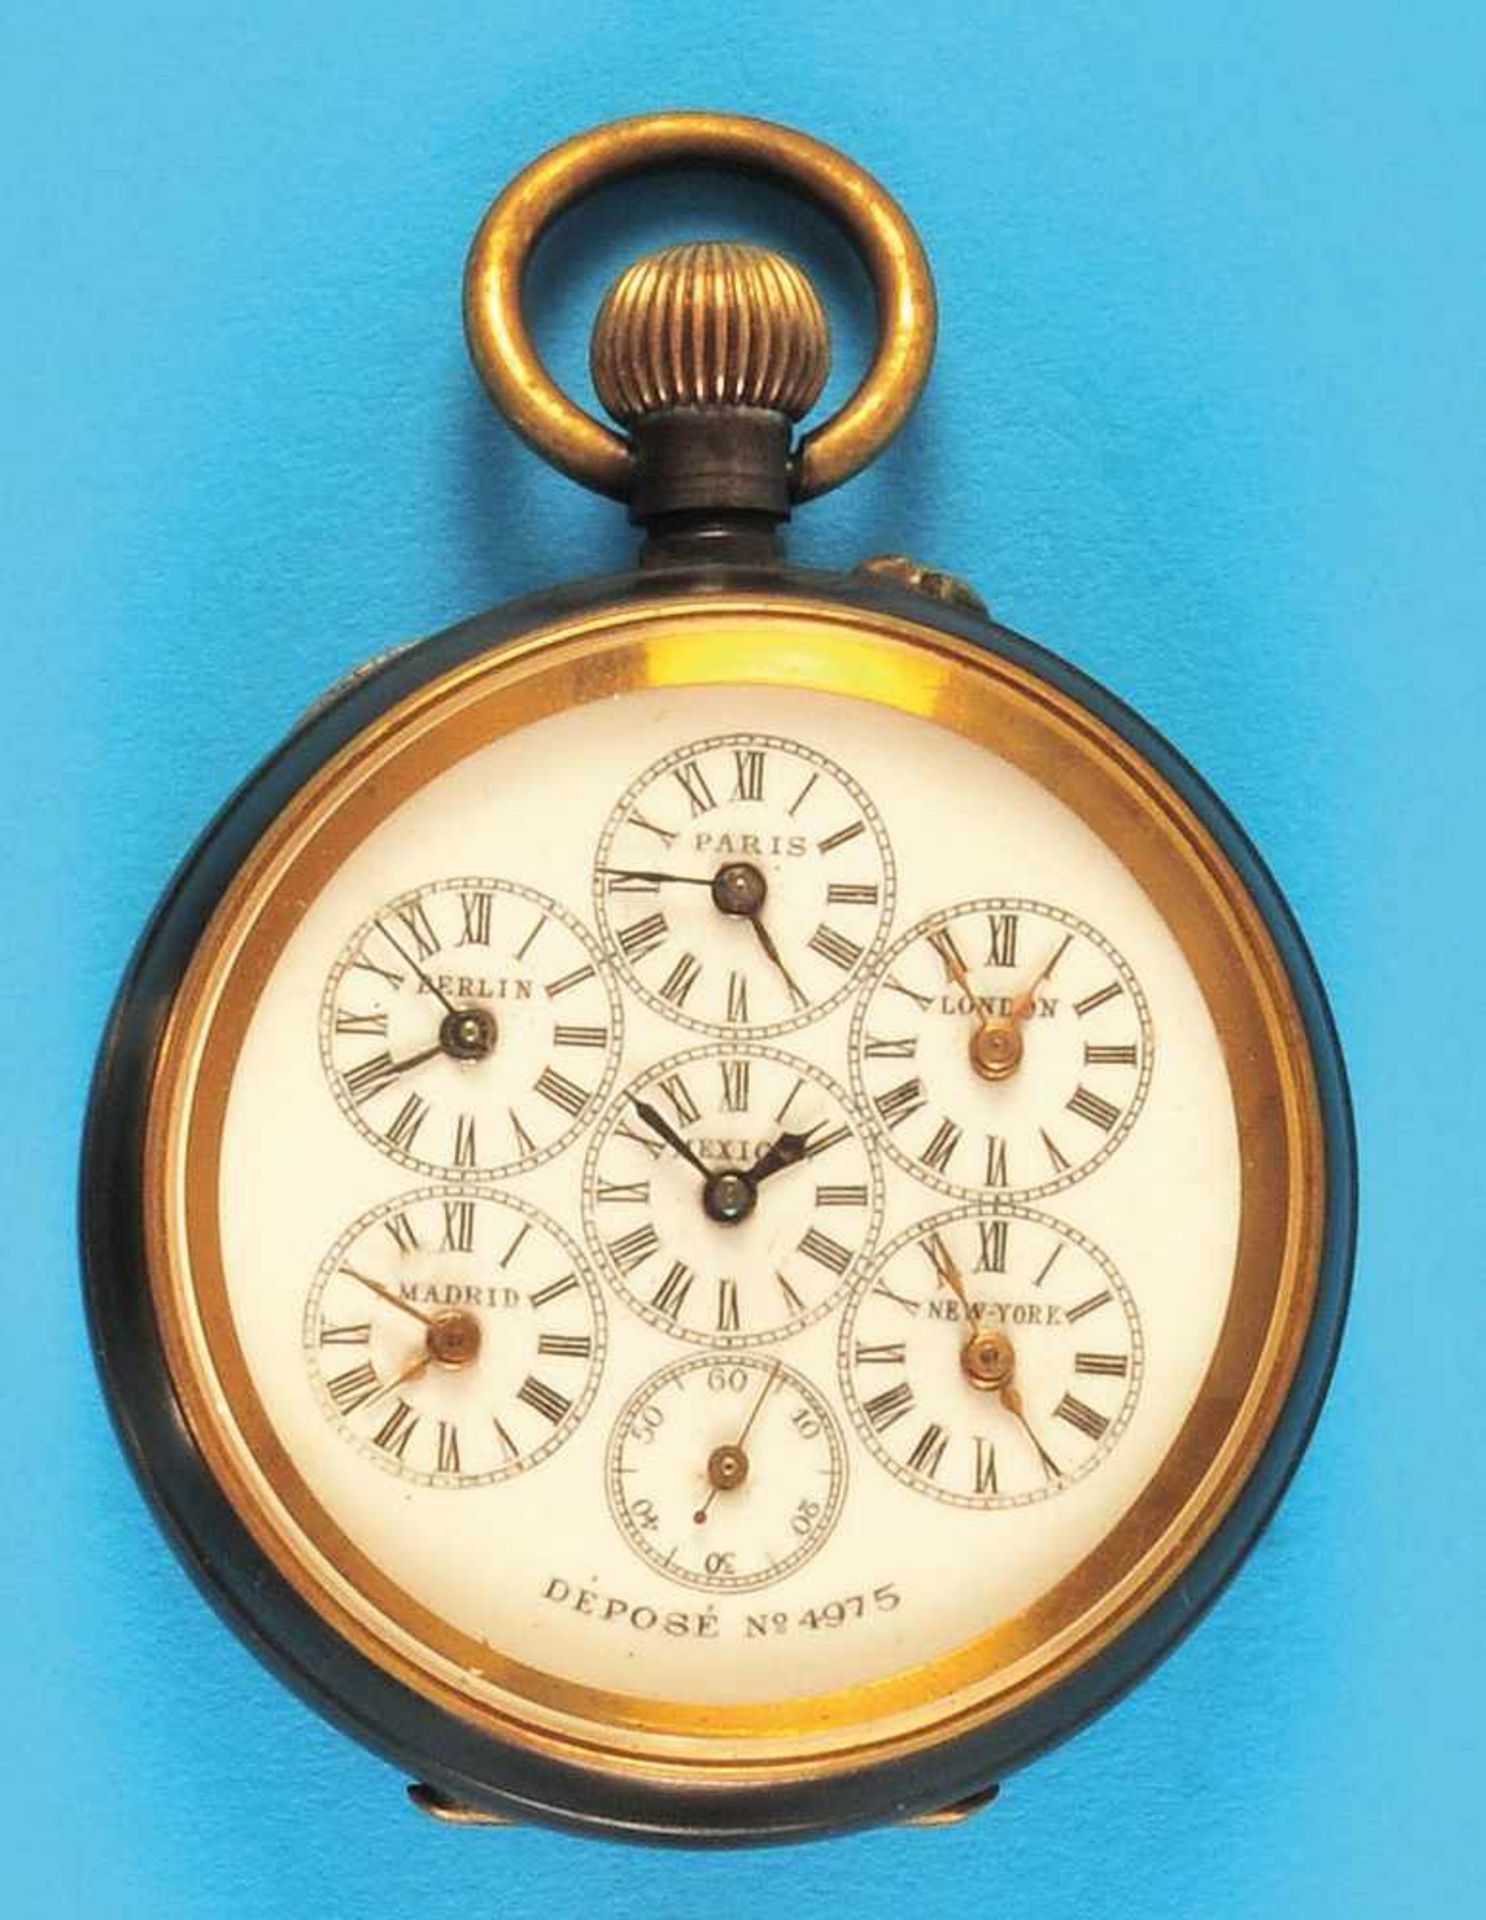 World time pocket watchWeltzeit-Taschenuhr im brunierten Gehäuse, Emailzifferblatt mit 6 kleinen